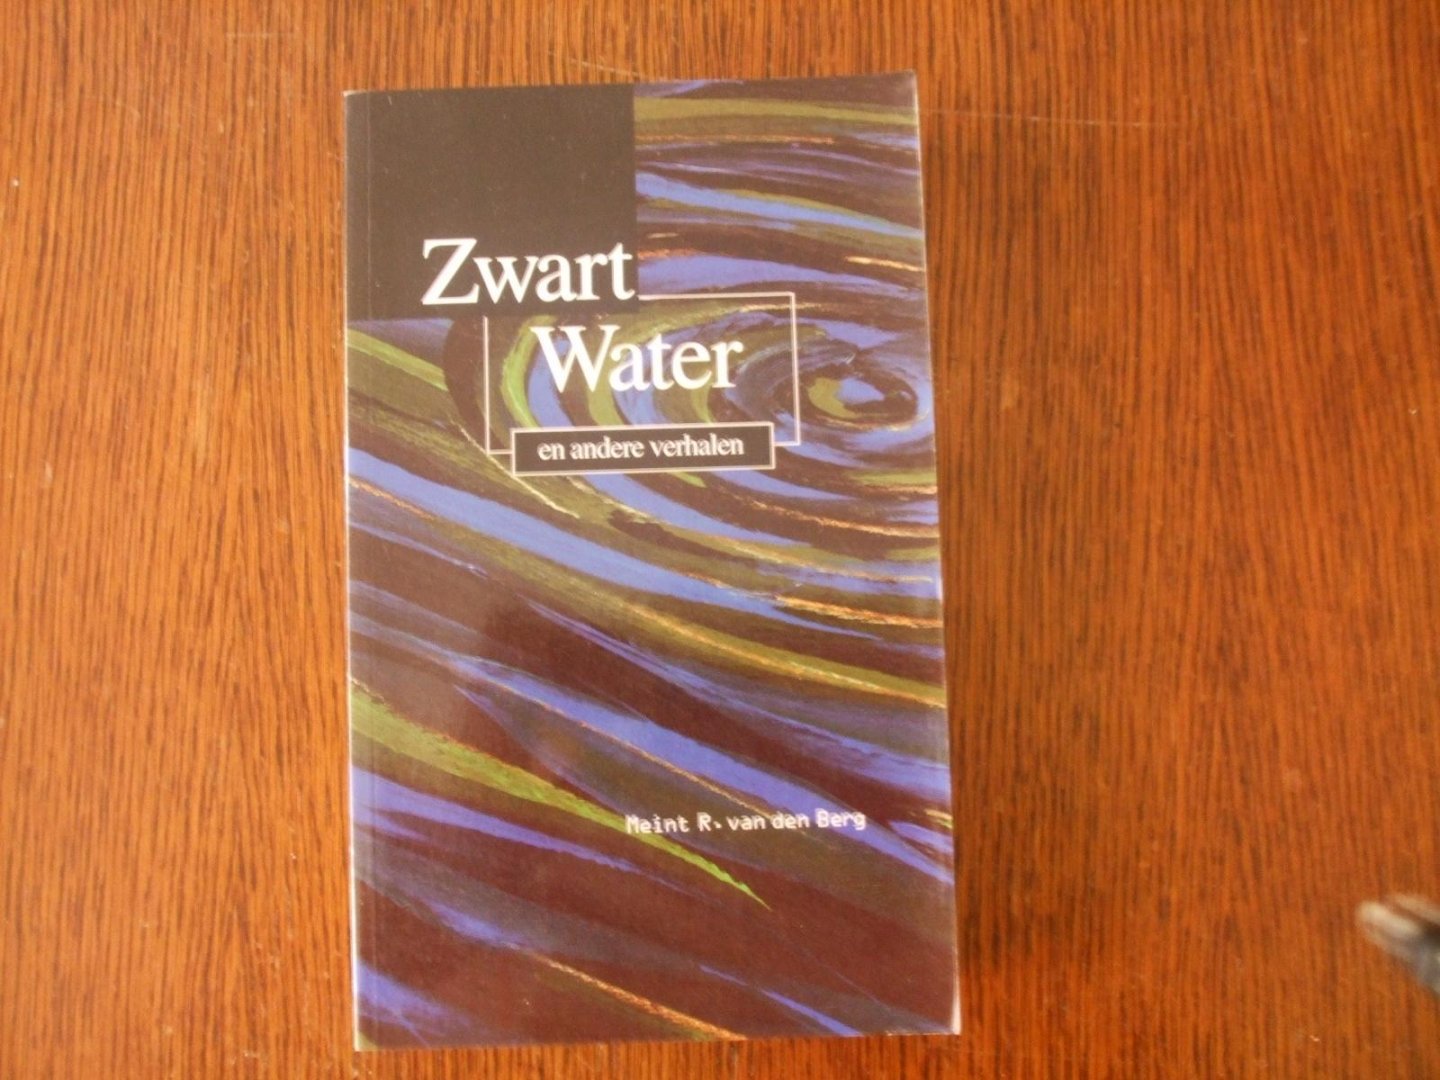 Meint R van den Berg - Zwart water en andere verhalen / druk 1